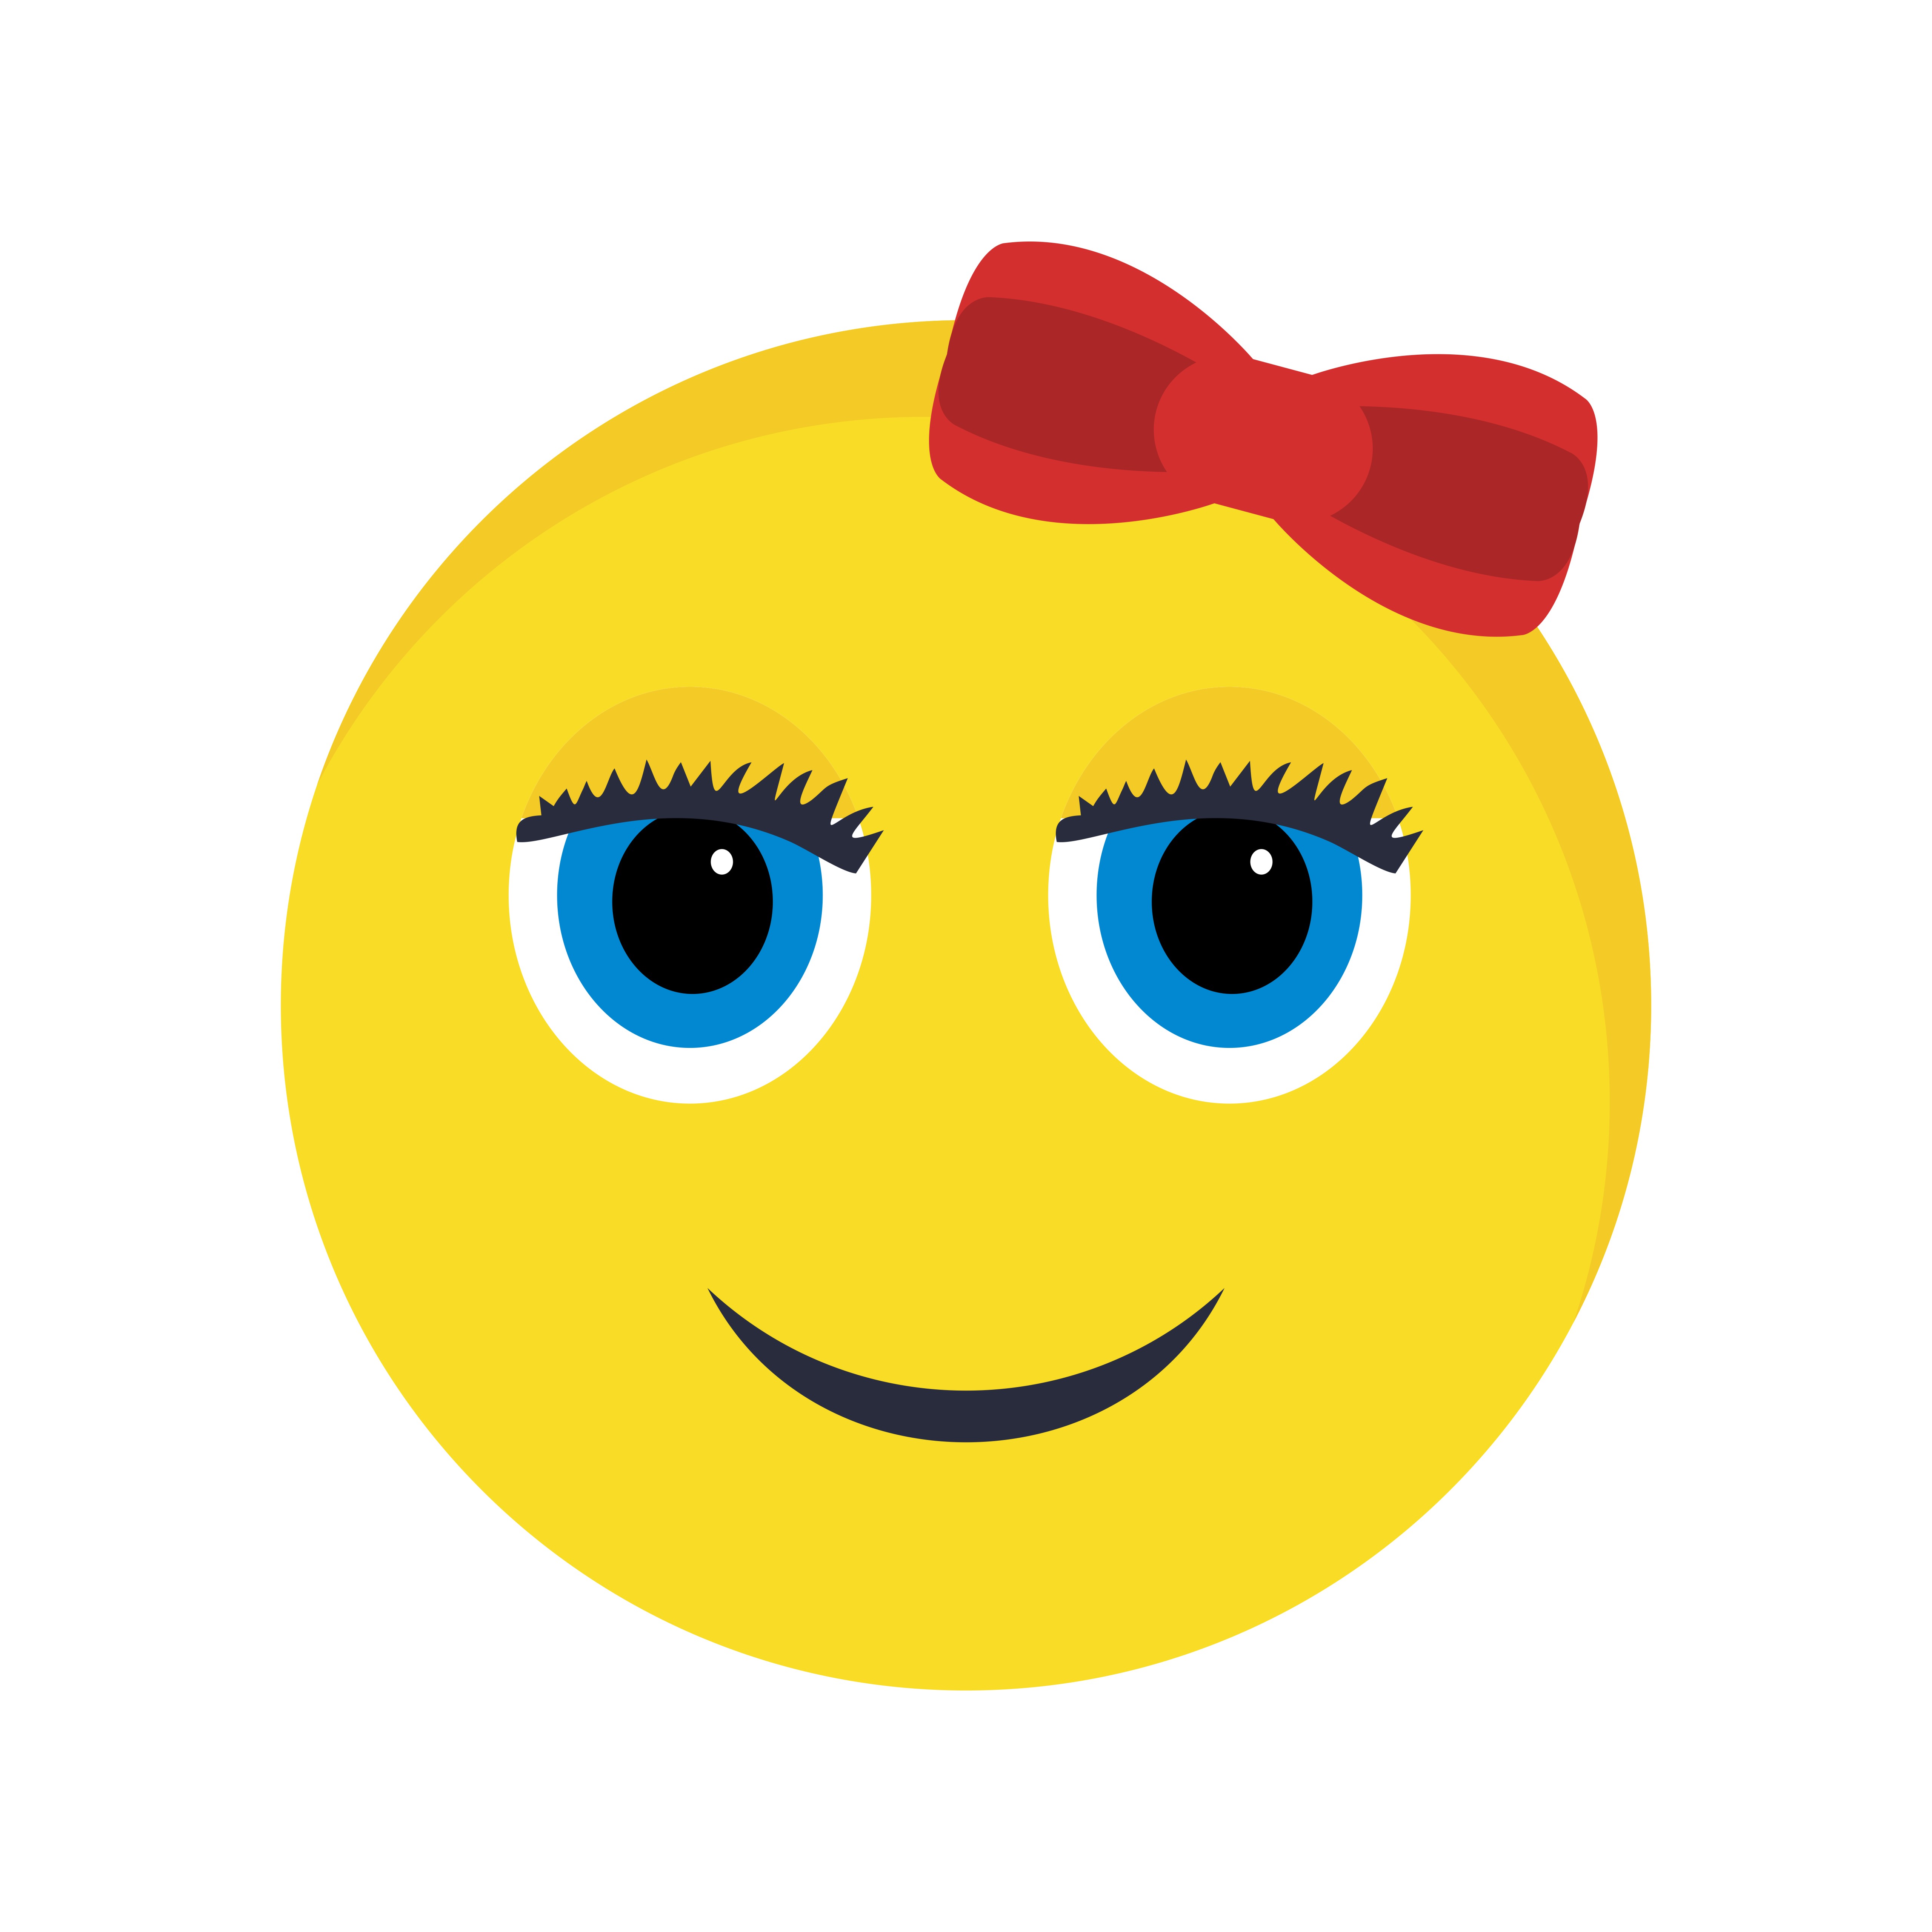  Girl  Emoji  Vector Icon 380935 Download Free Vectors 